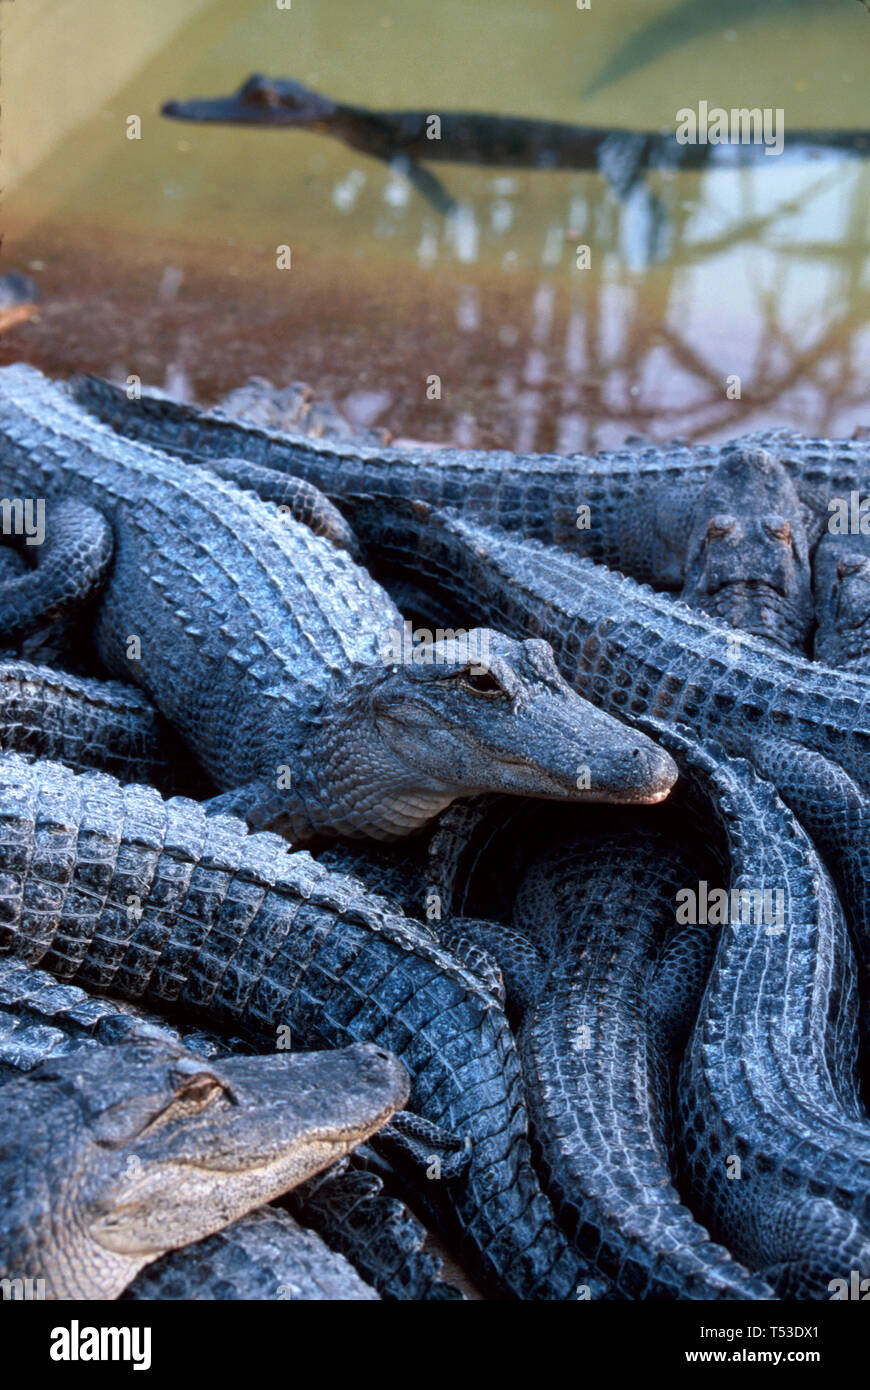 Miami Florida, Homestead Everglades Alligator Farm 3 ans jeunes, Grow up Pen attraction touristique, Banque D'Images